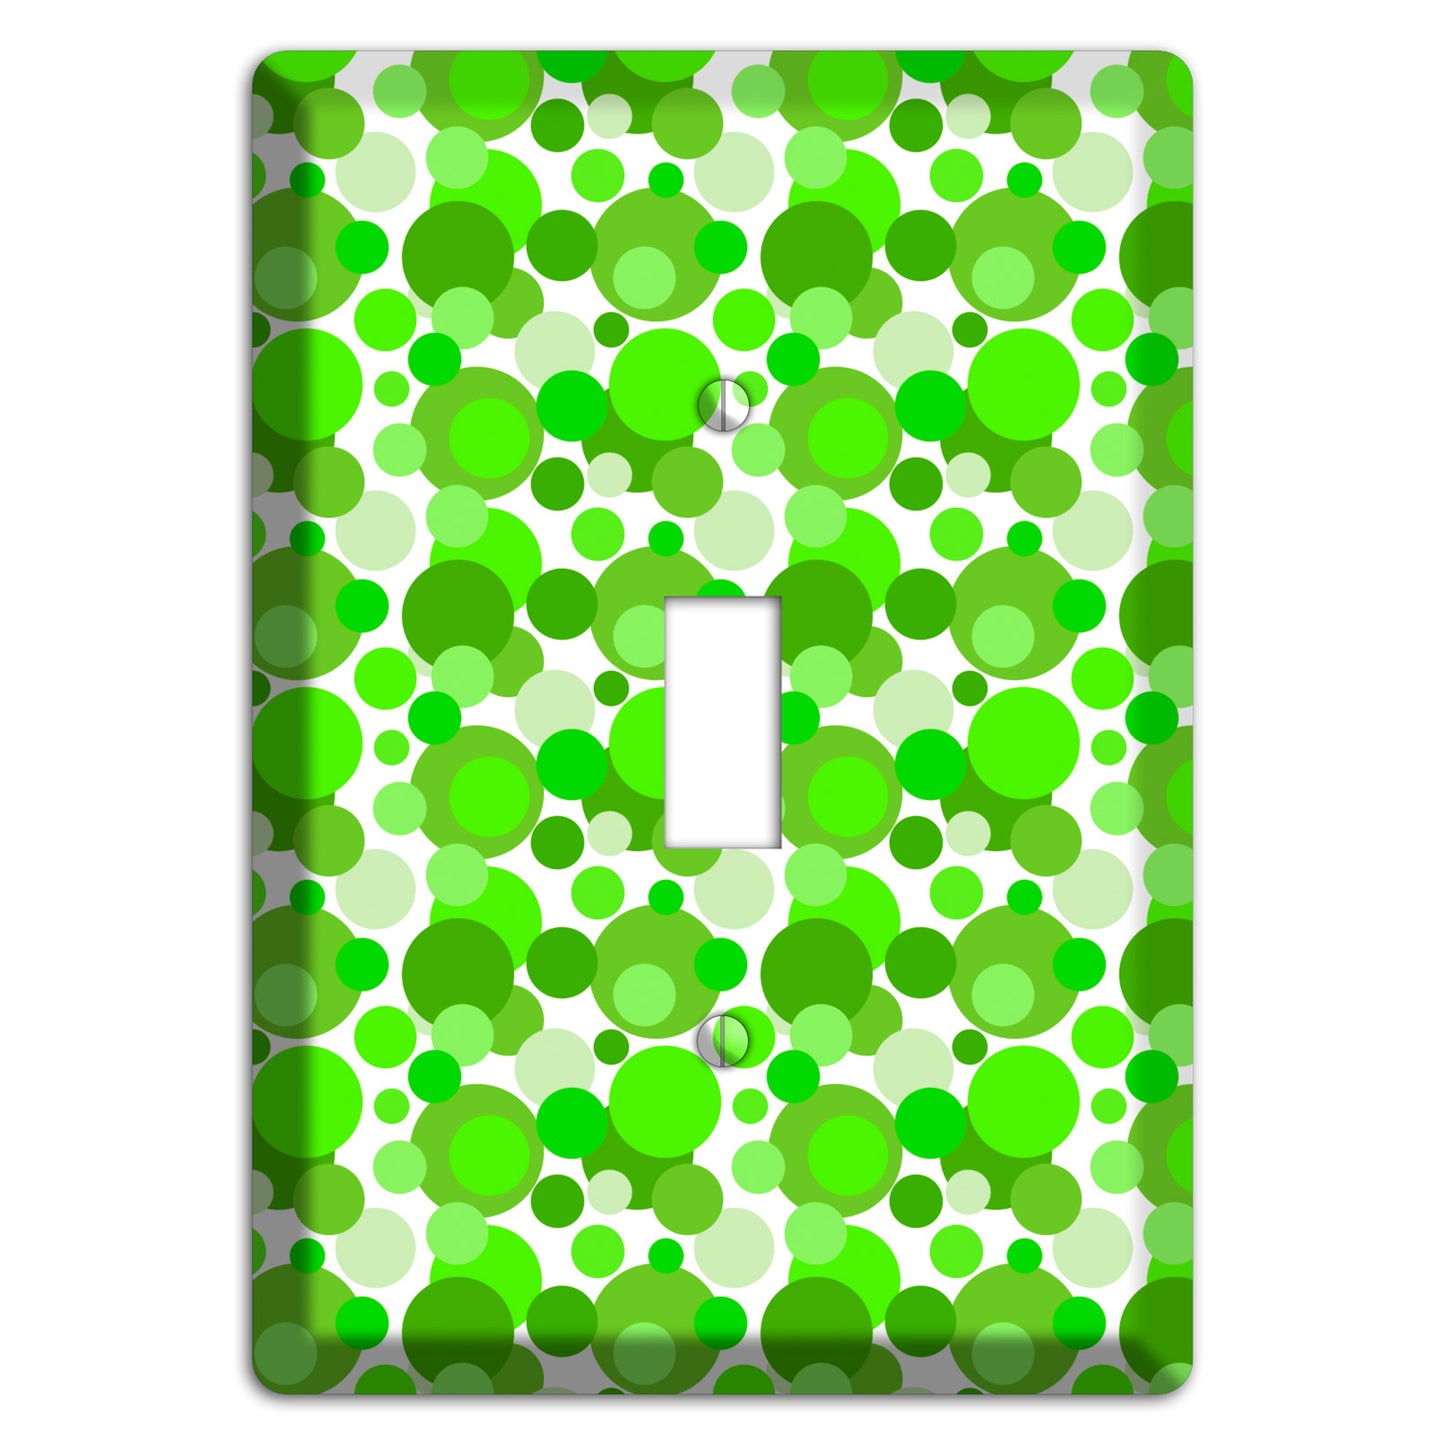 Multi Green Bubble Dots Cover Plates